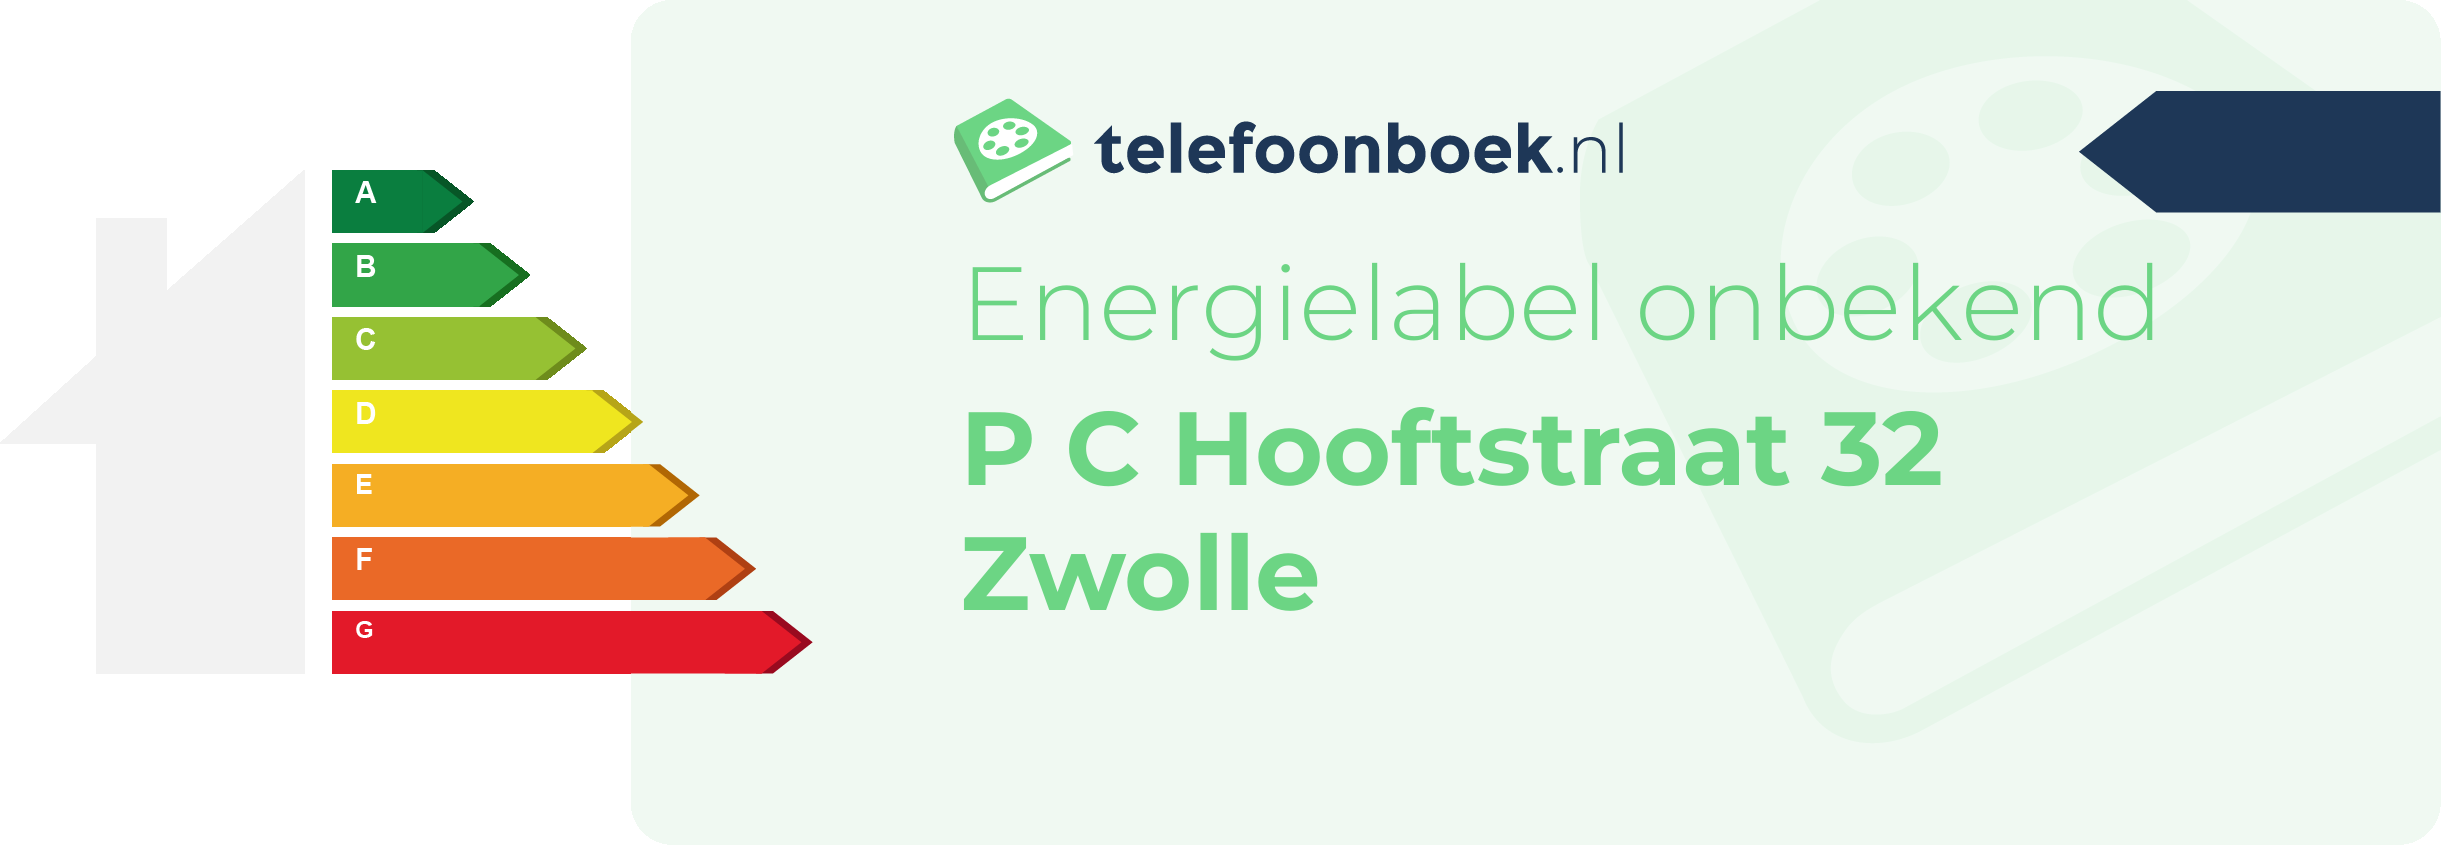 Energielabel P C Hooftstraat 32 Zwolle